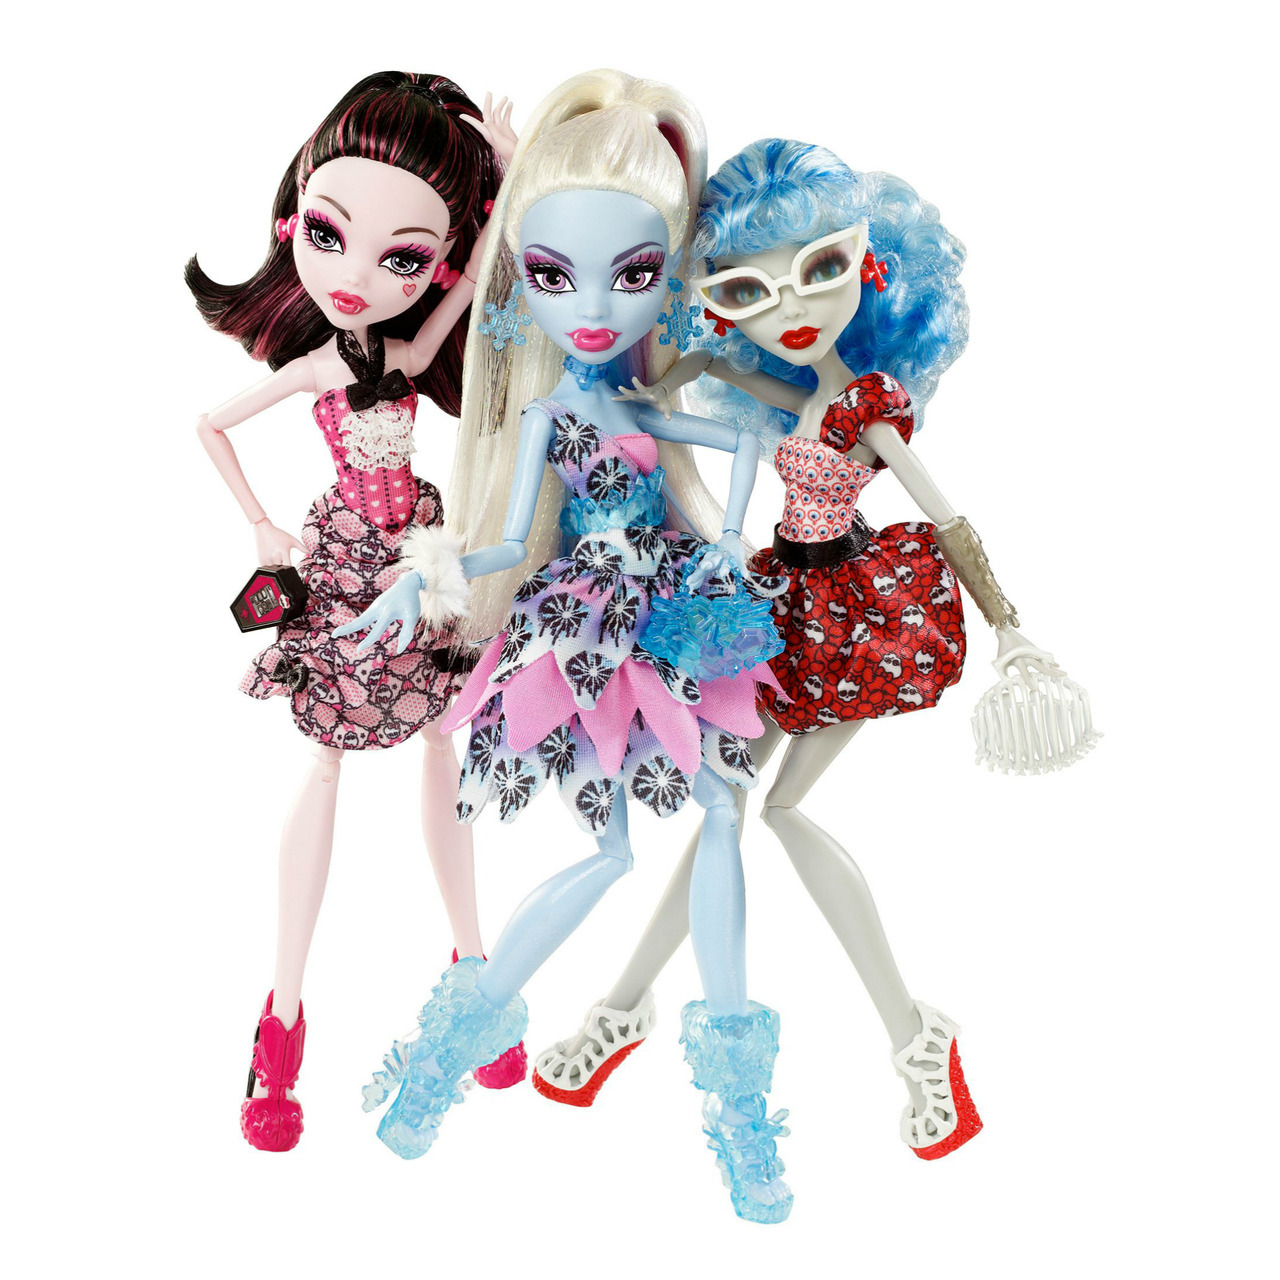 Monster high girl dolls